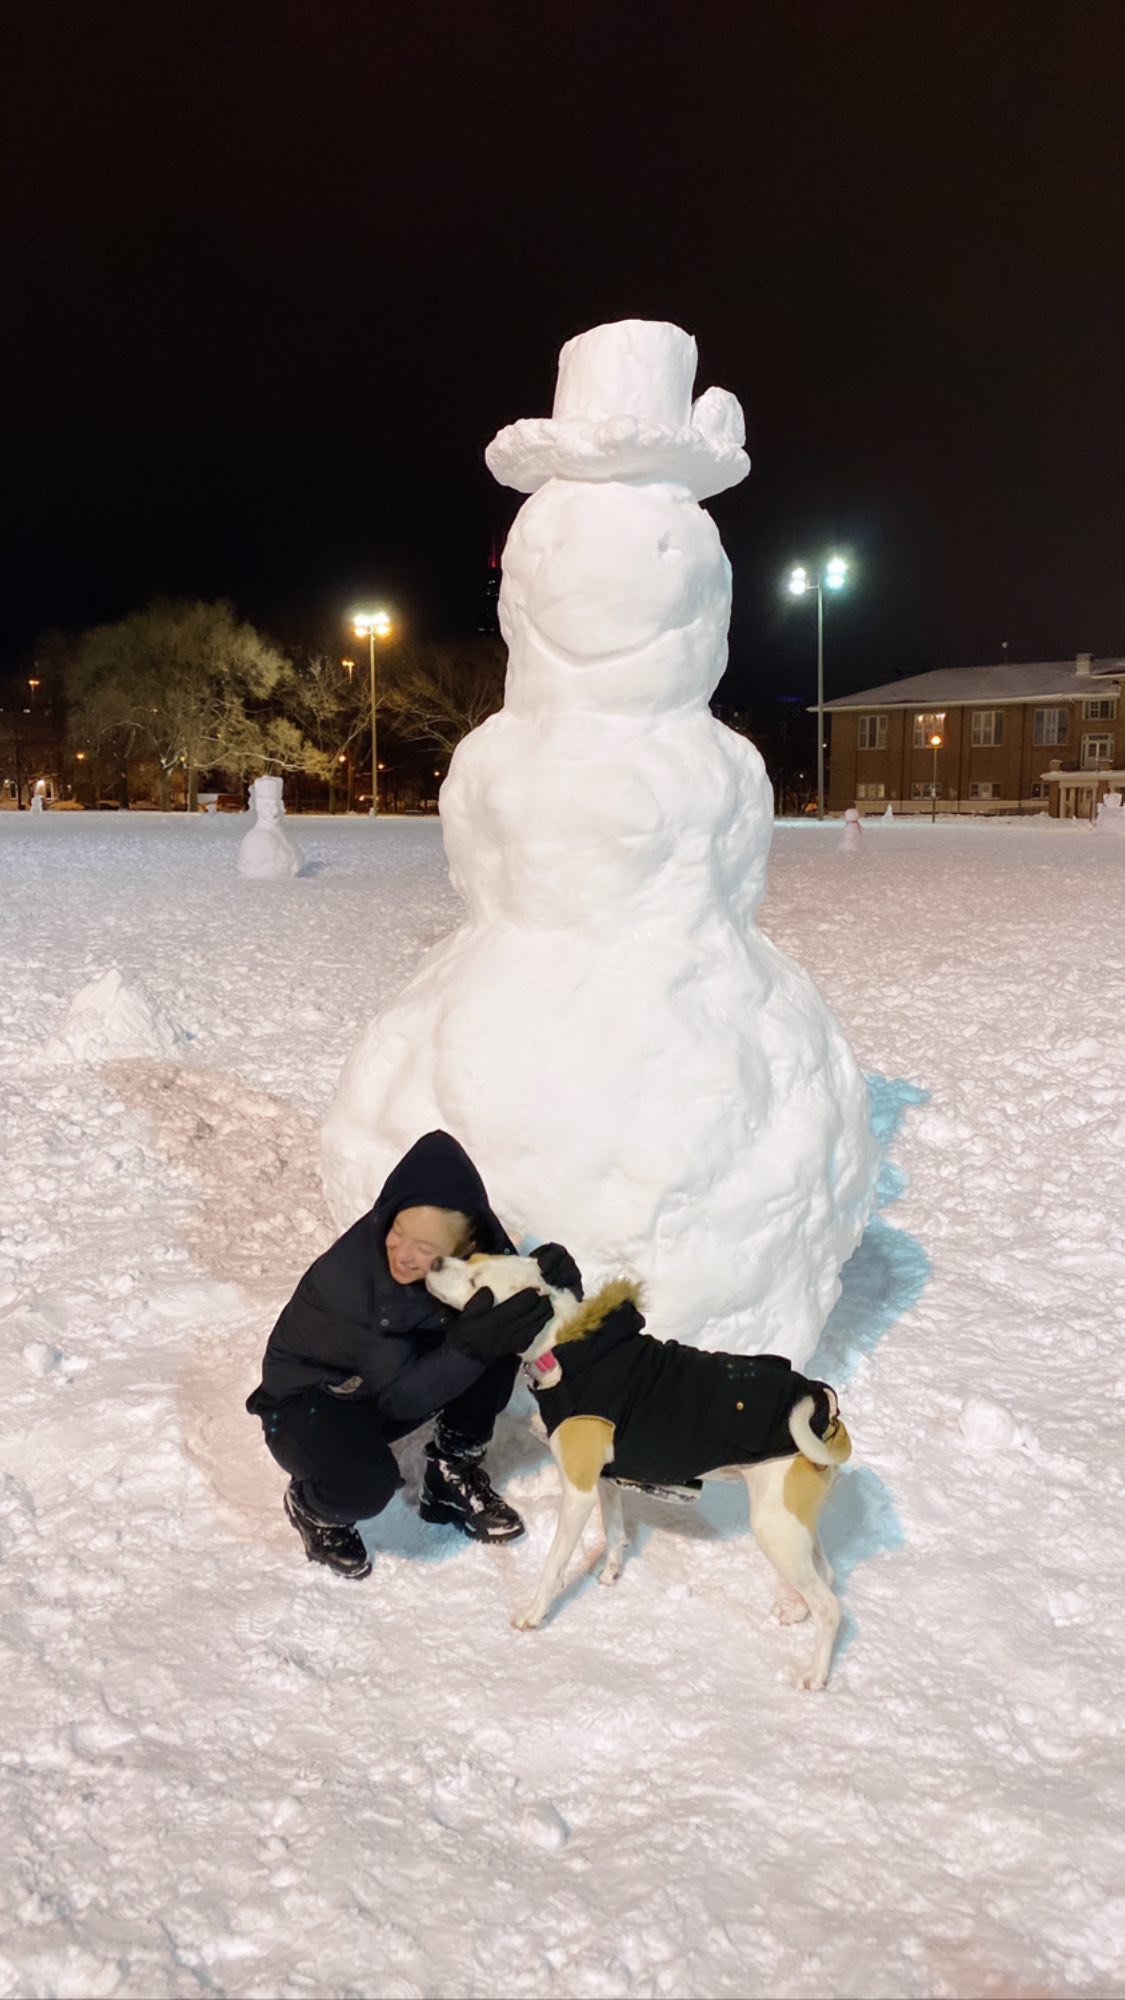 PHOTOS Sydney Sweeney construit une arme de bonhommes de neige!